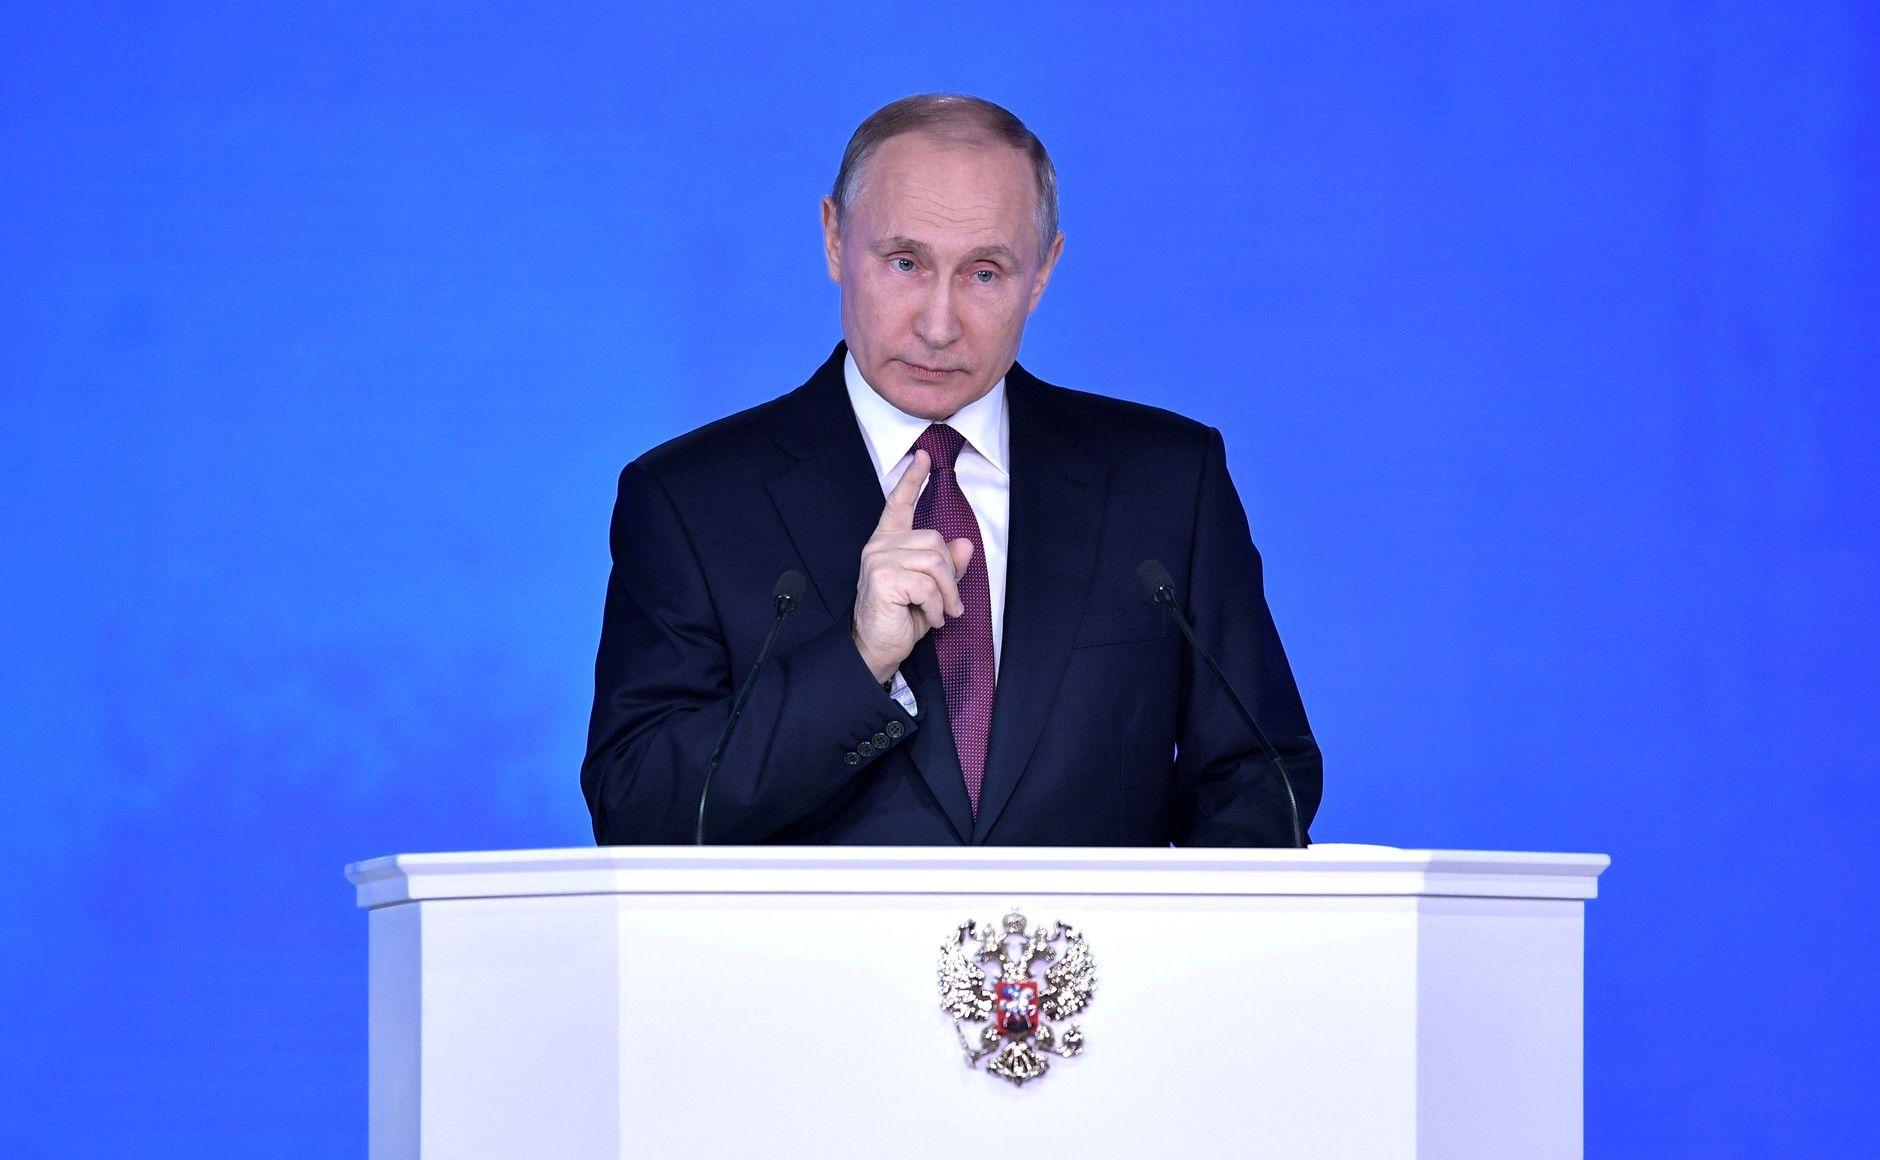 «Цивилизационные изменения». Что означает послание президента Путина для союзников России